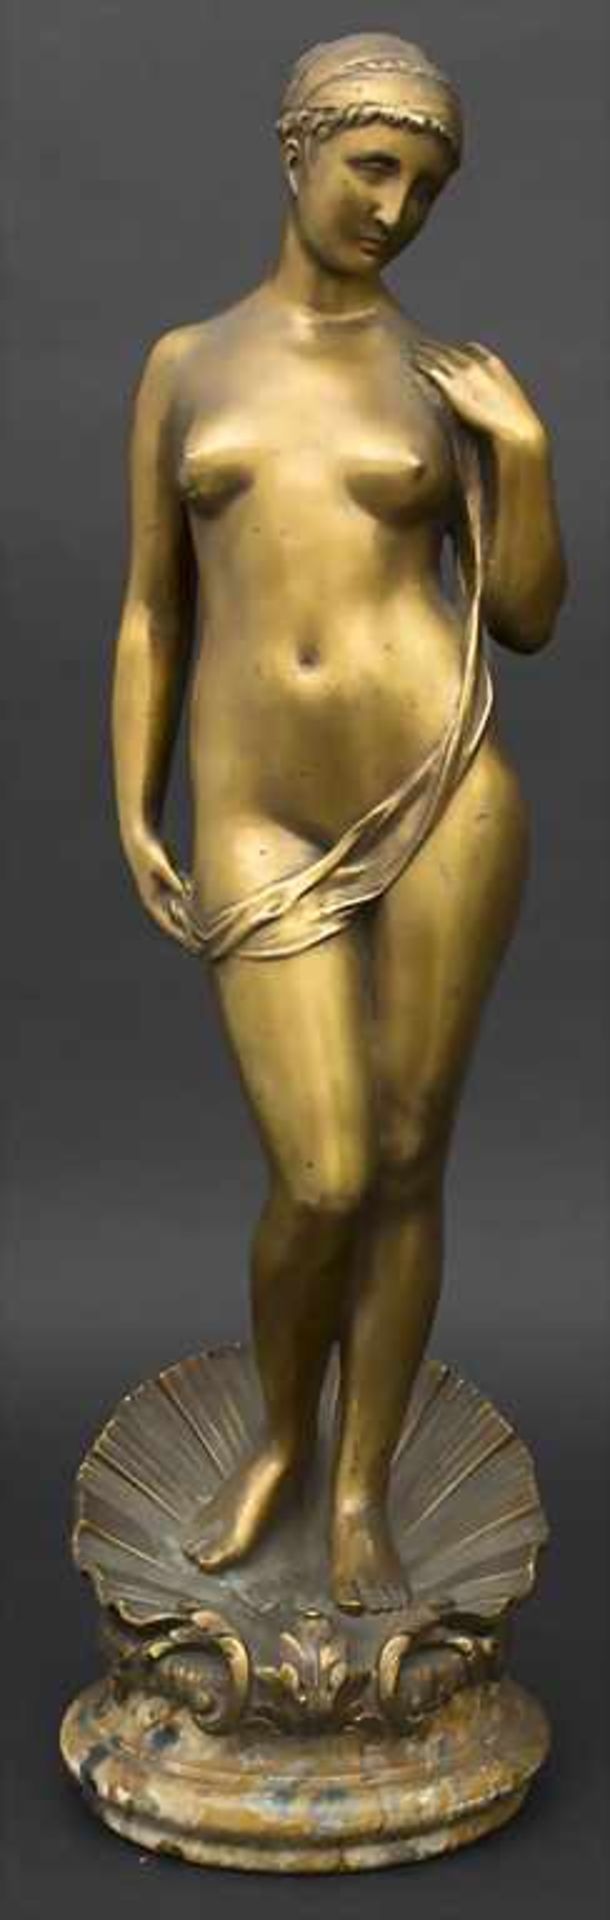 Marcel Rau 1886-1966, Die Geburt der Venus / The birth of Venus, Marcel Rau, 1917Material: Bronze,